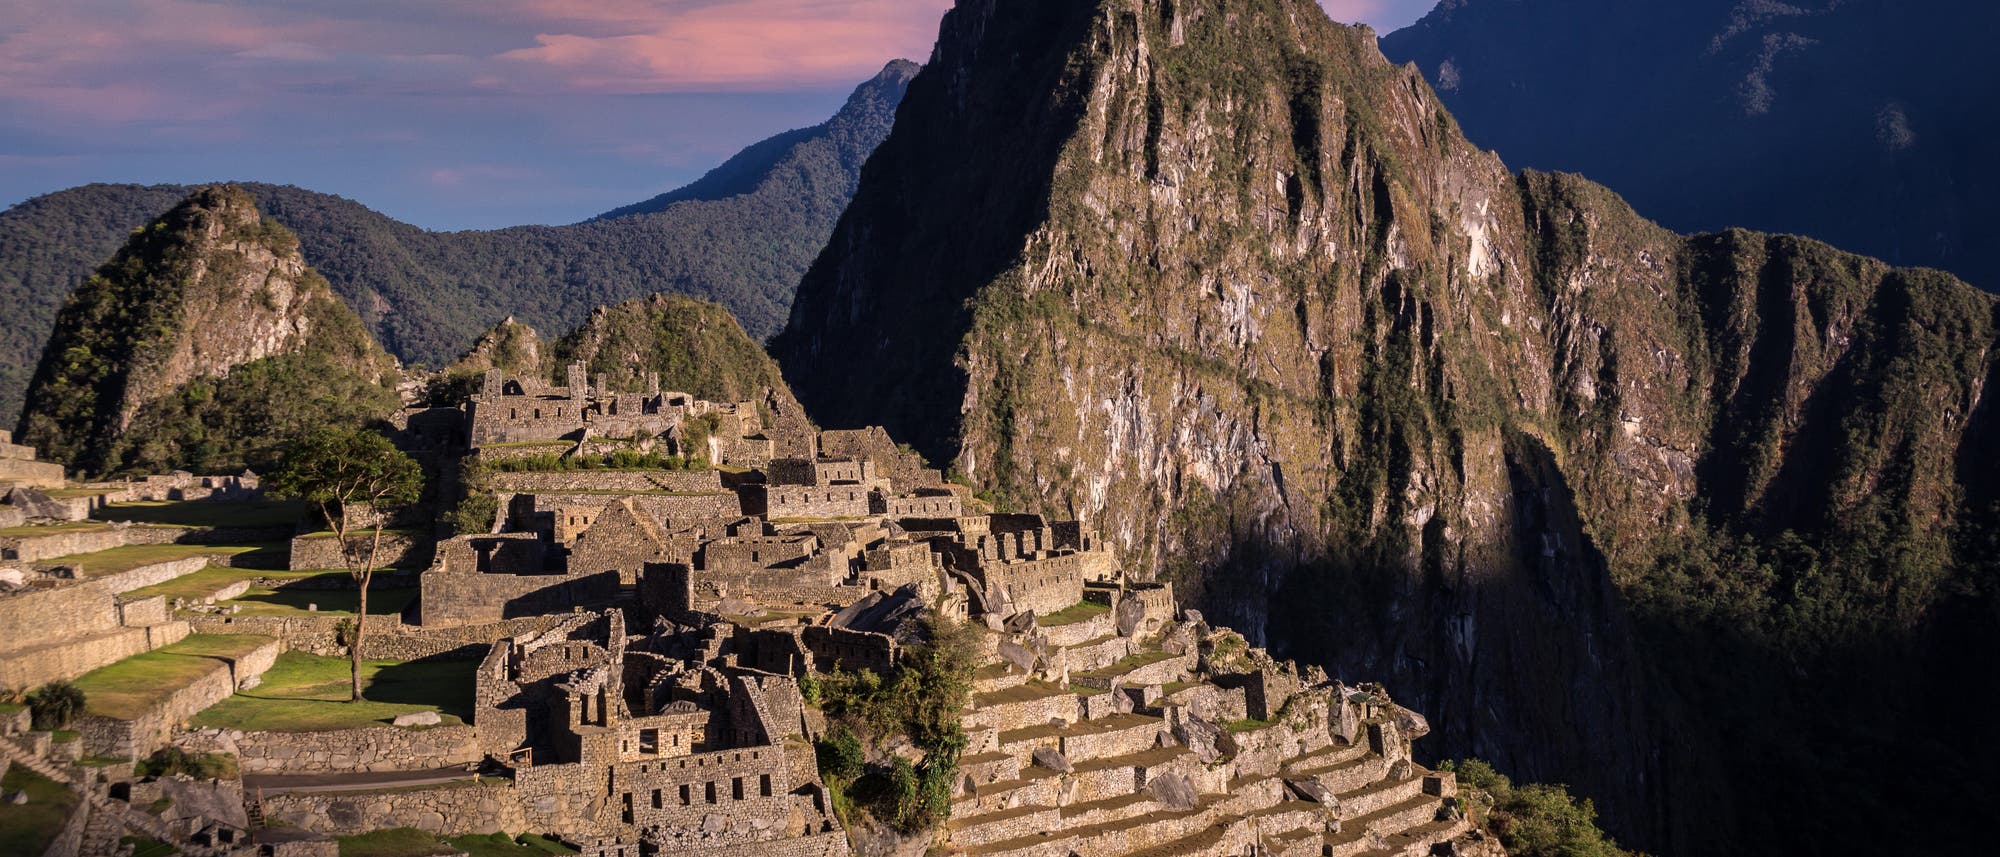 Die Palastruine von Machu Picchu liegt auf einem Bergkamm der peruanischen Anden. 1911 gelangte der Archäologe Hiram Bingham zu der Stätte auf 2450 Metern Höhe und ließ sie freilegen. 